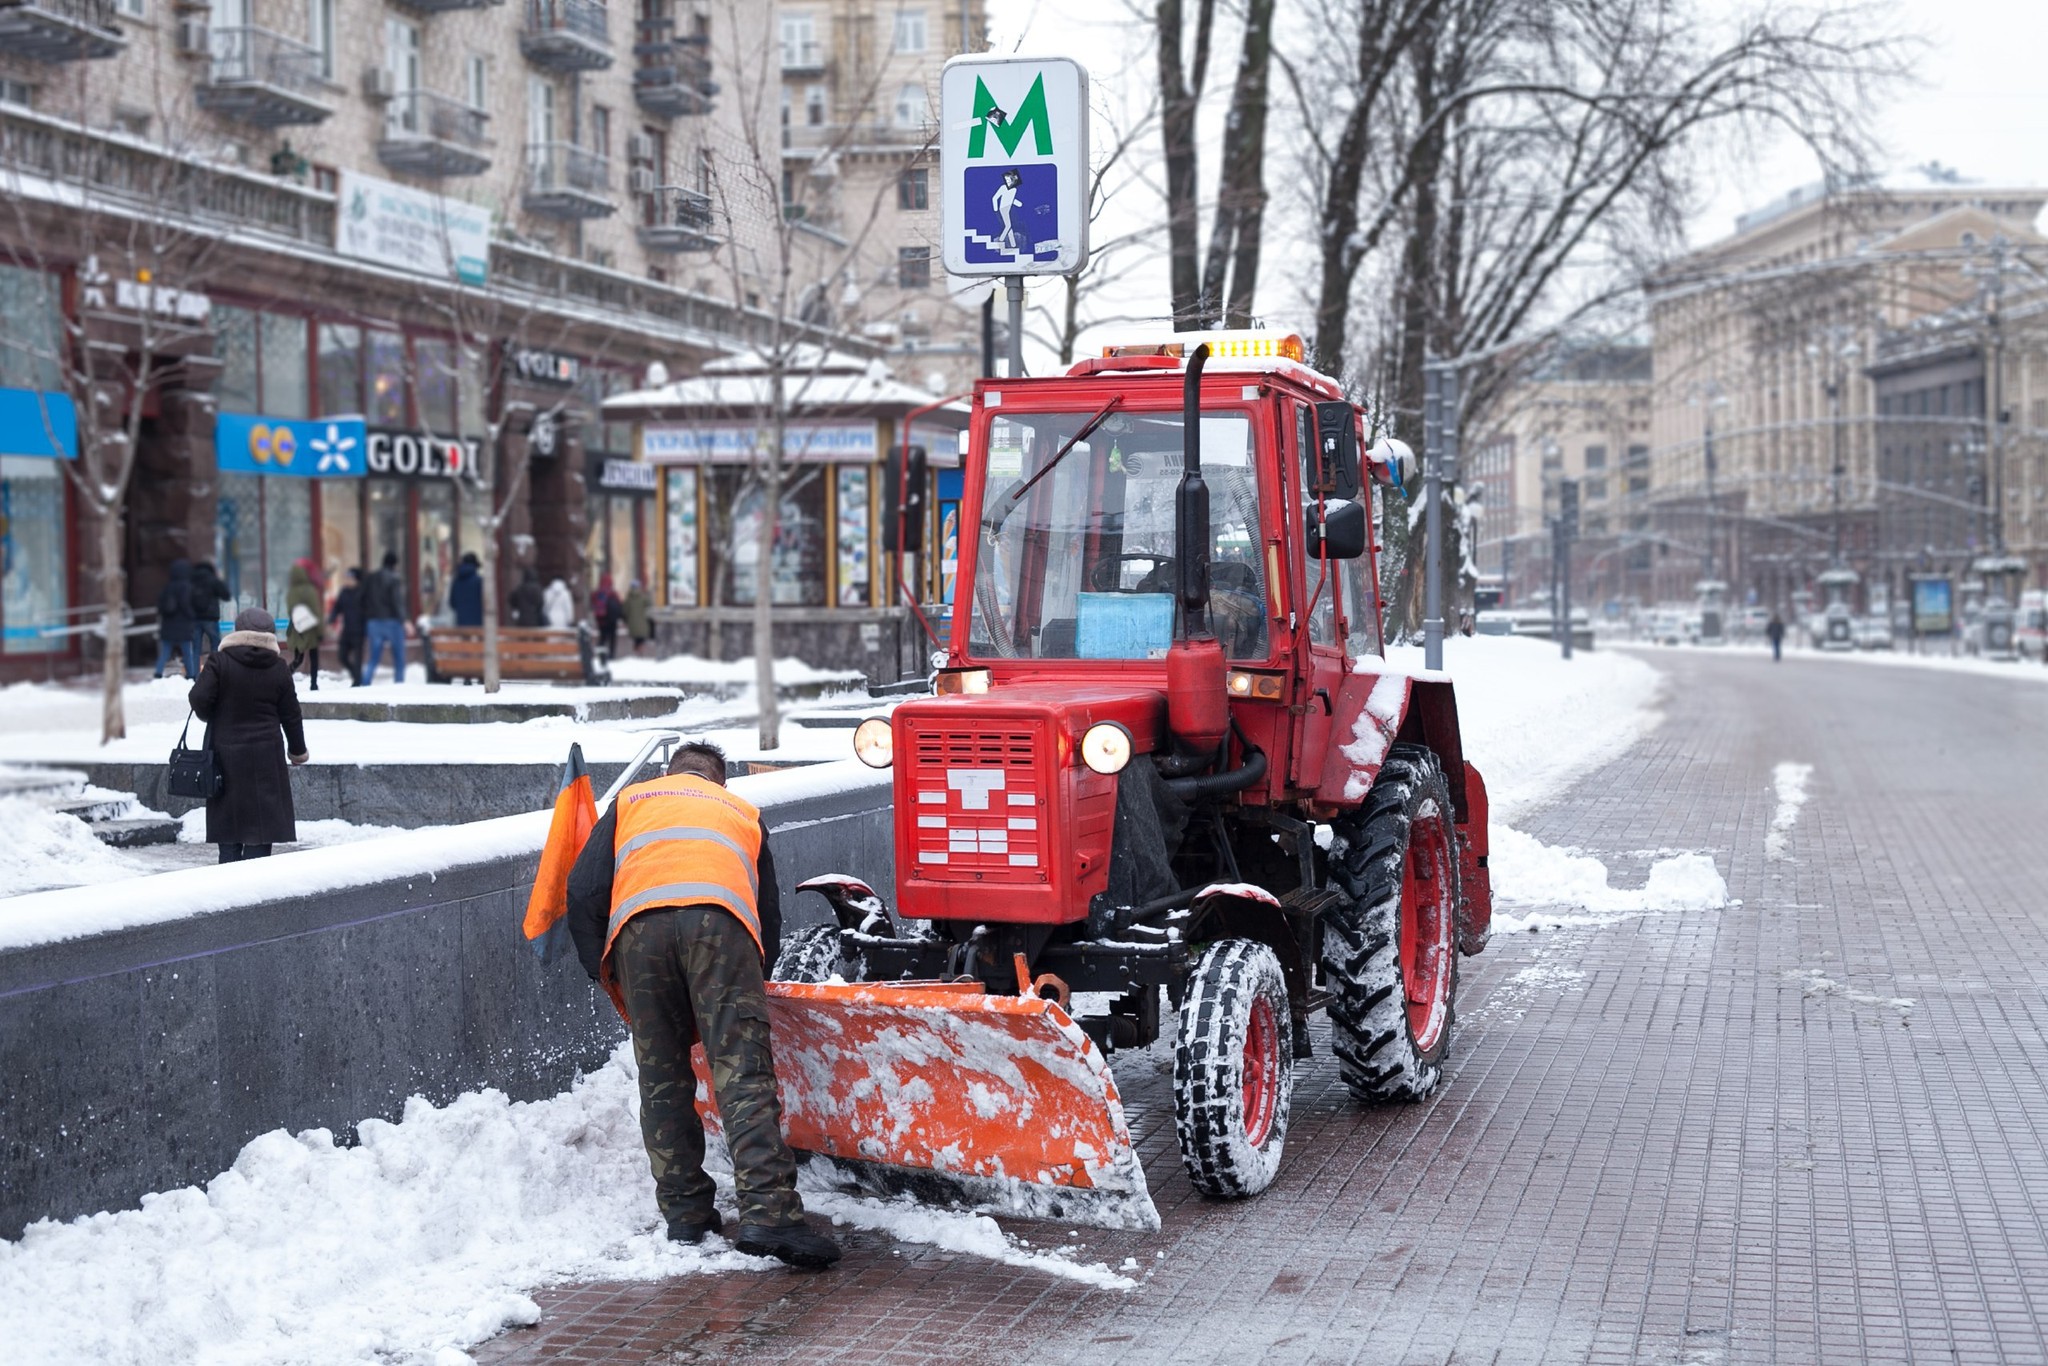 Київ засипає снігом, на дорогах працює 118 одиниць спецтехніки